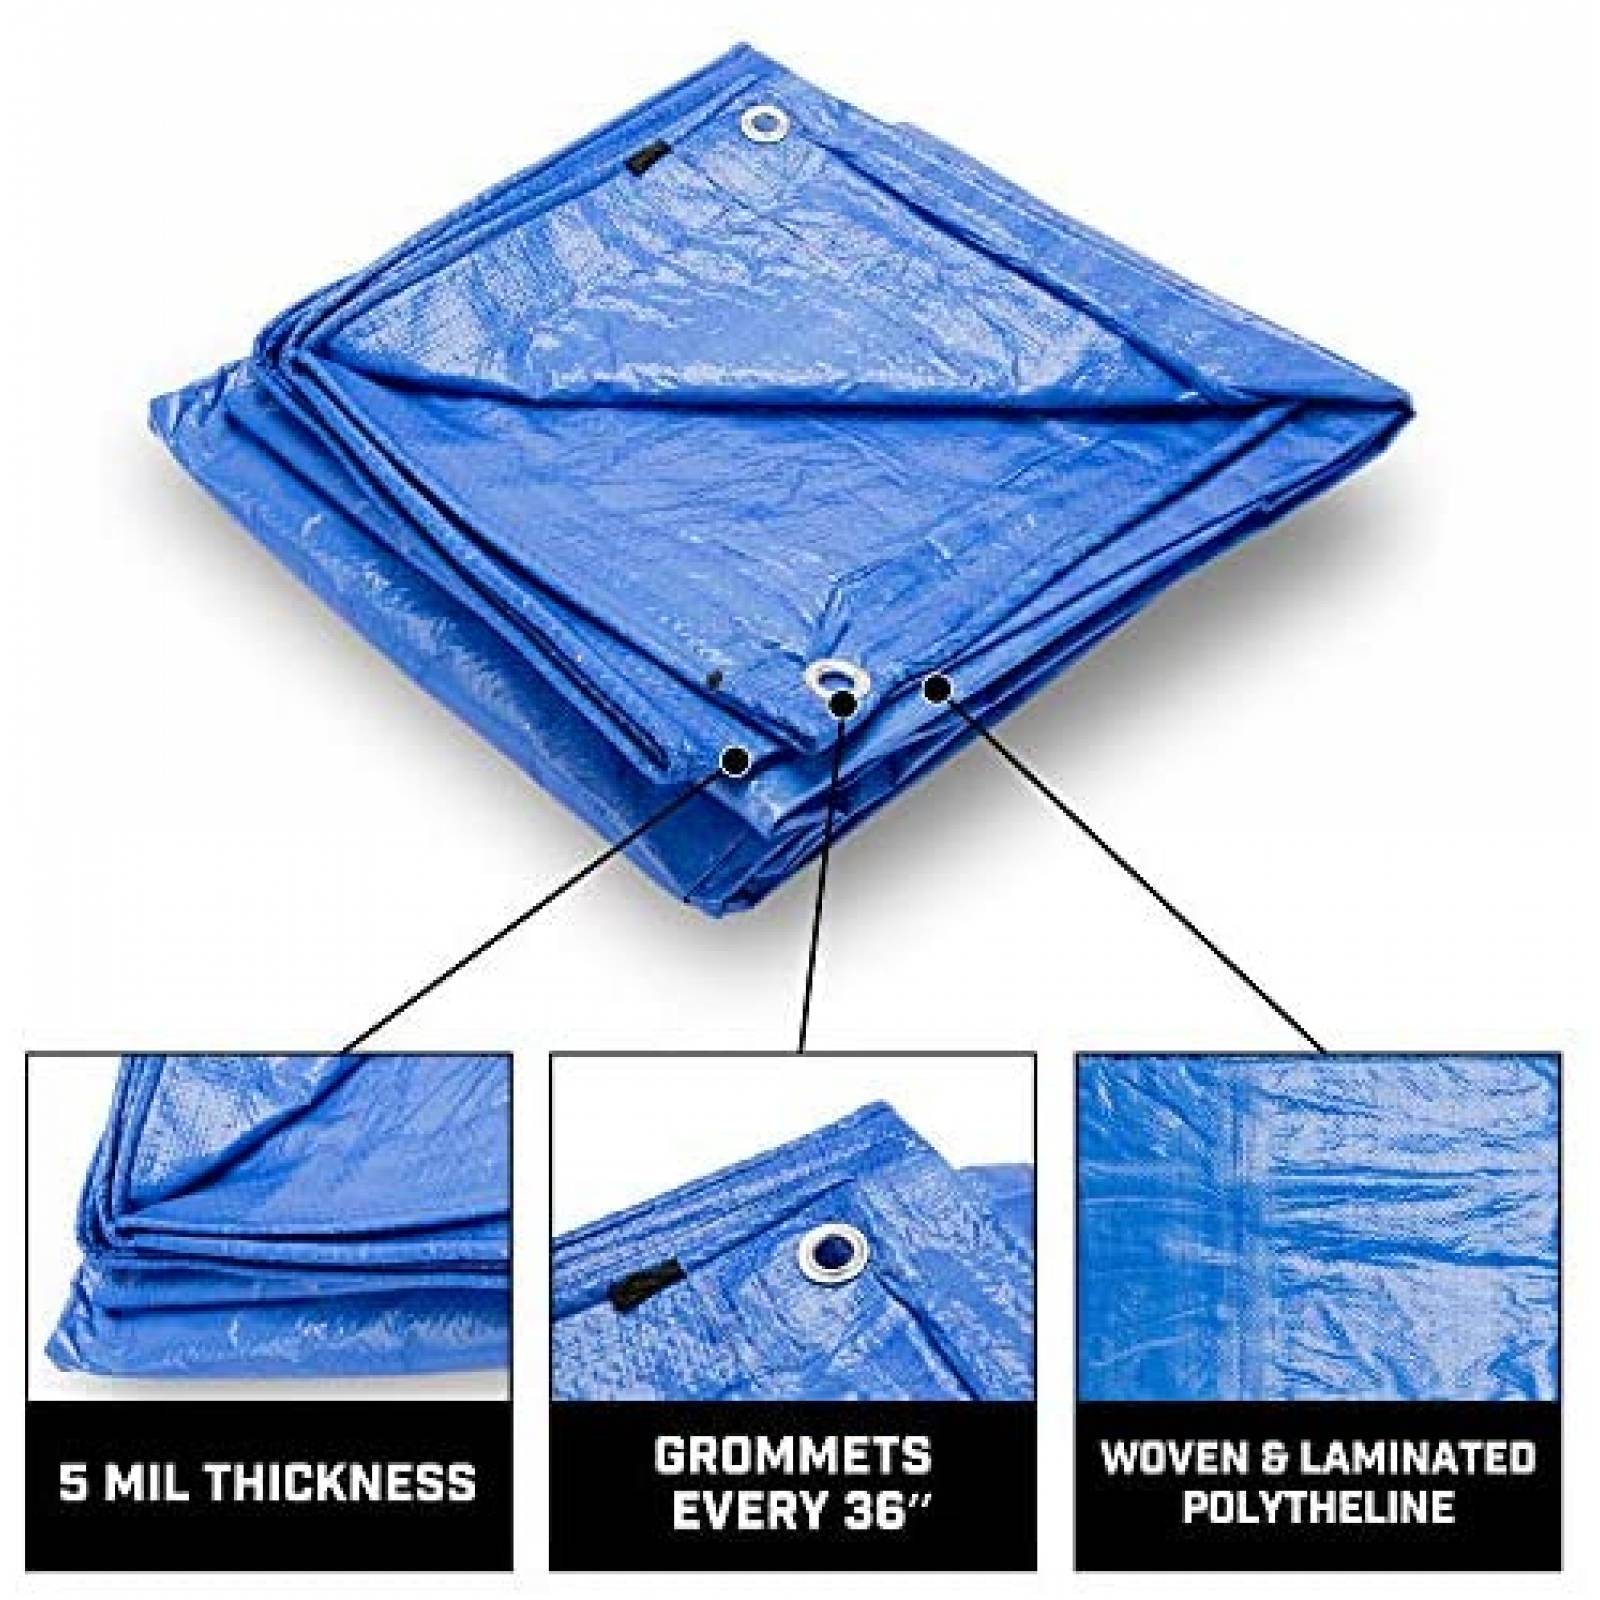 Cobertor B-Air Multi Usos A Prueba de Agua 6 x 8 Pies